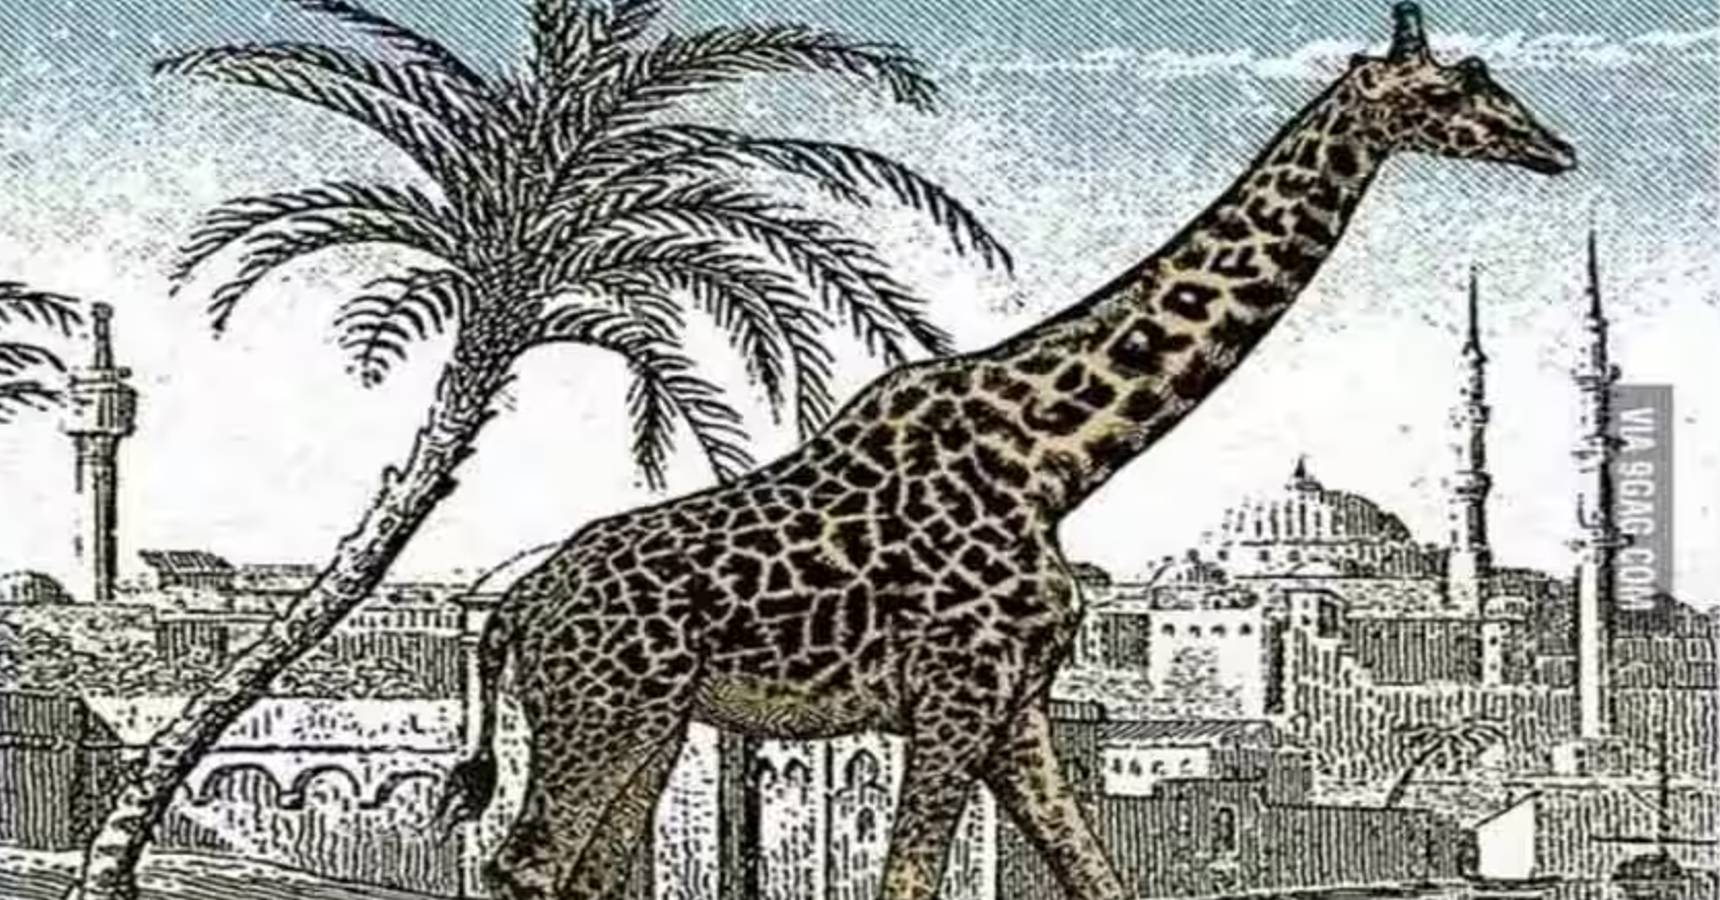 Optical illusion, Optical illusion giraffe